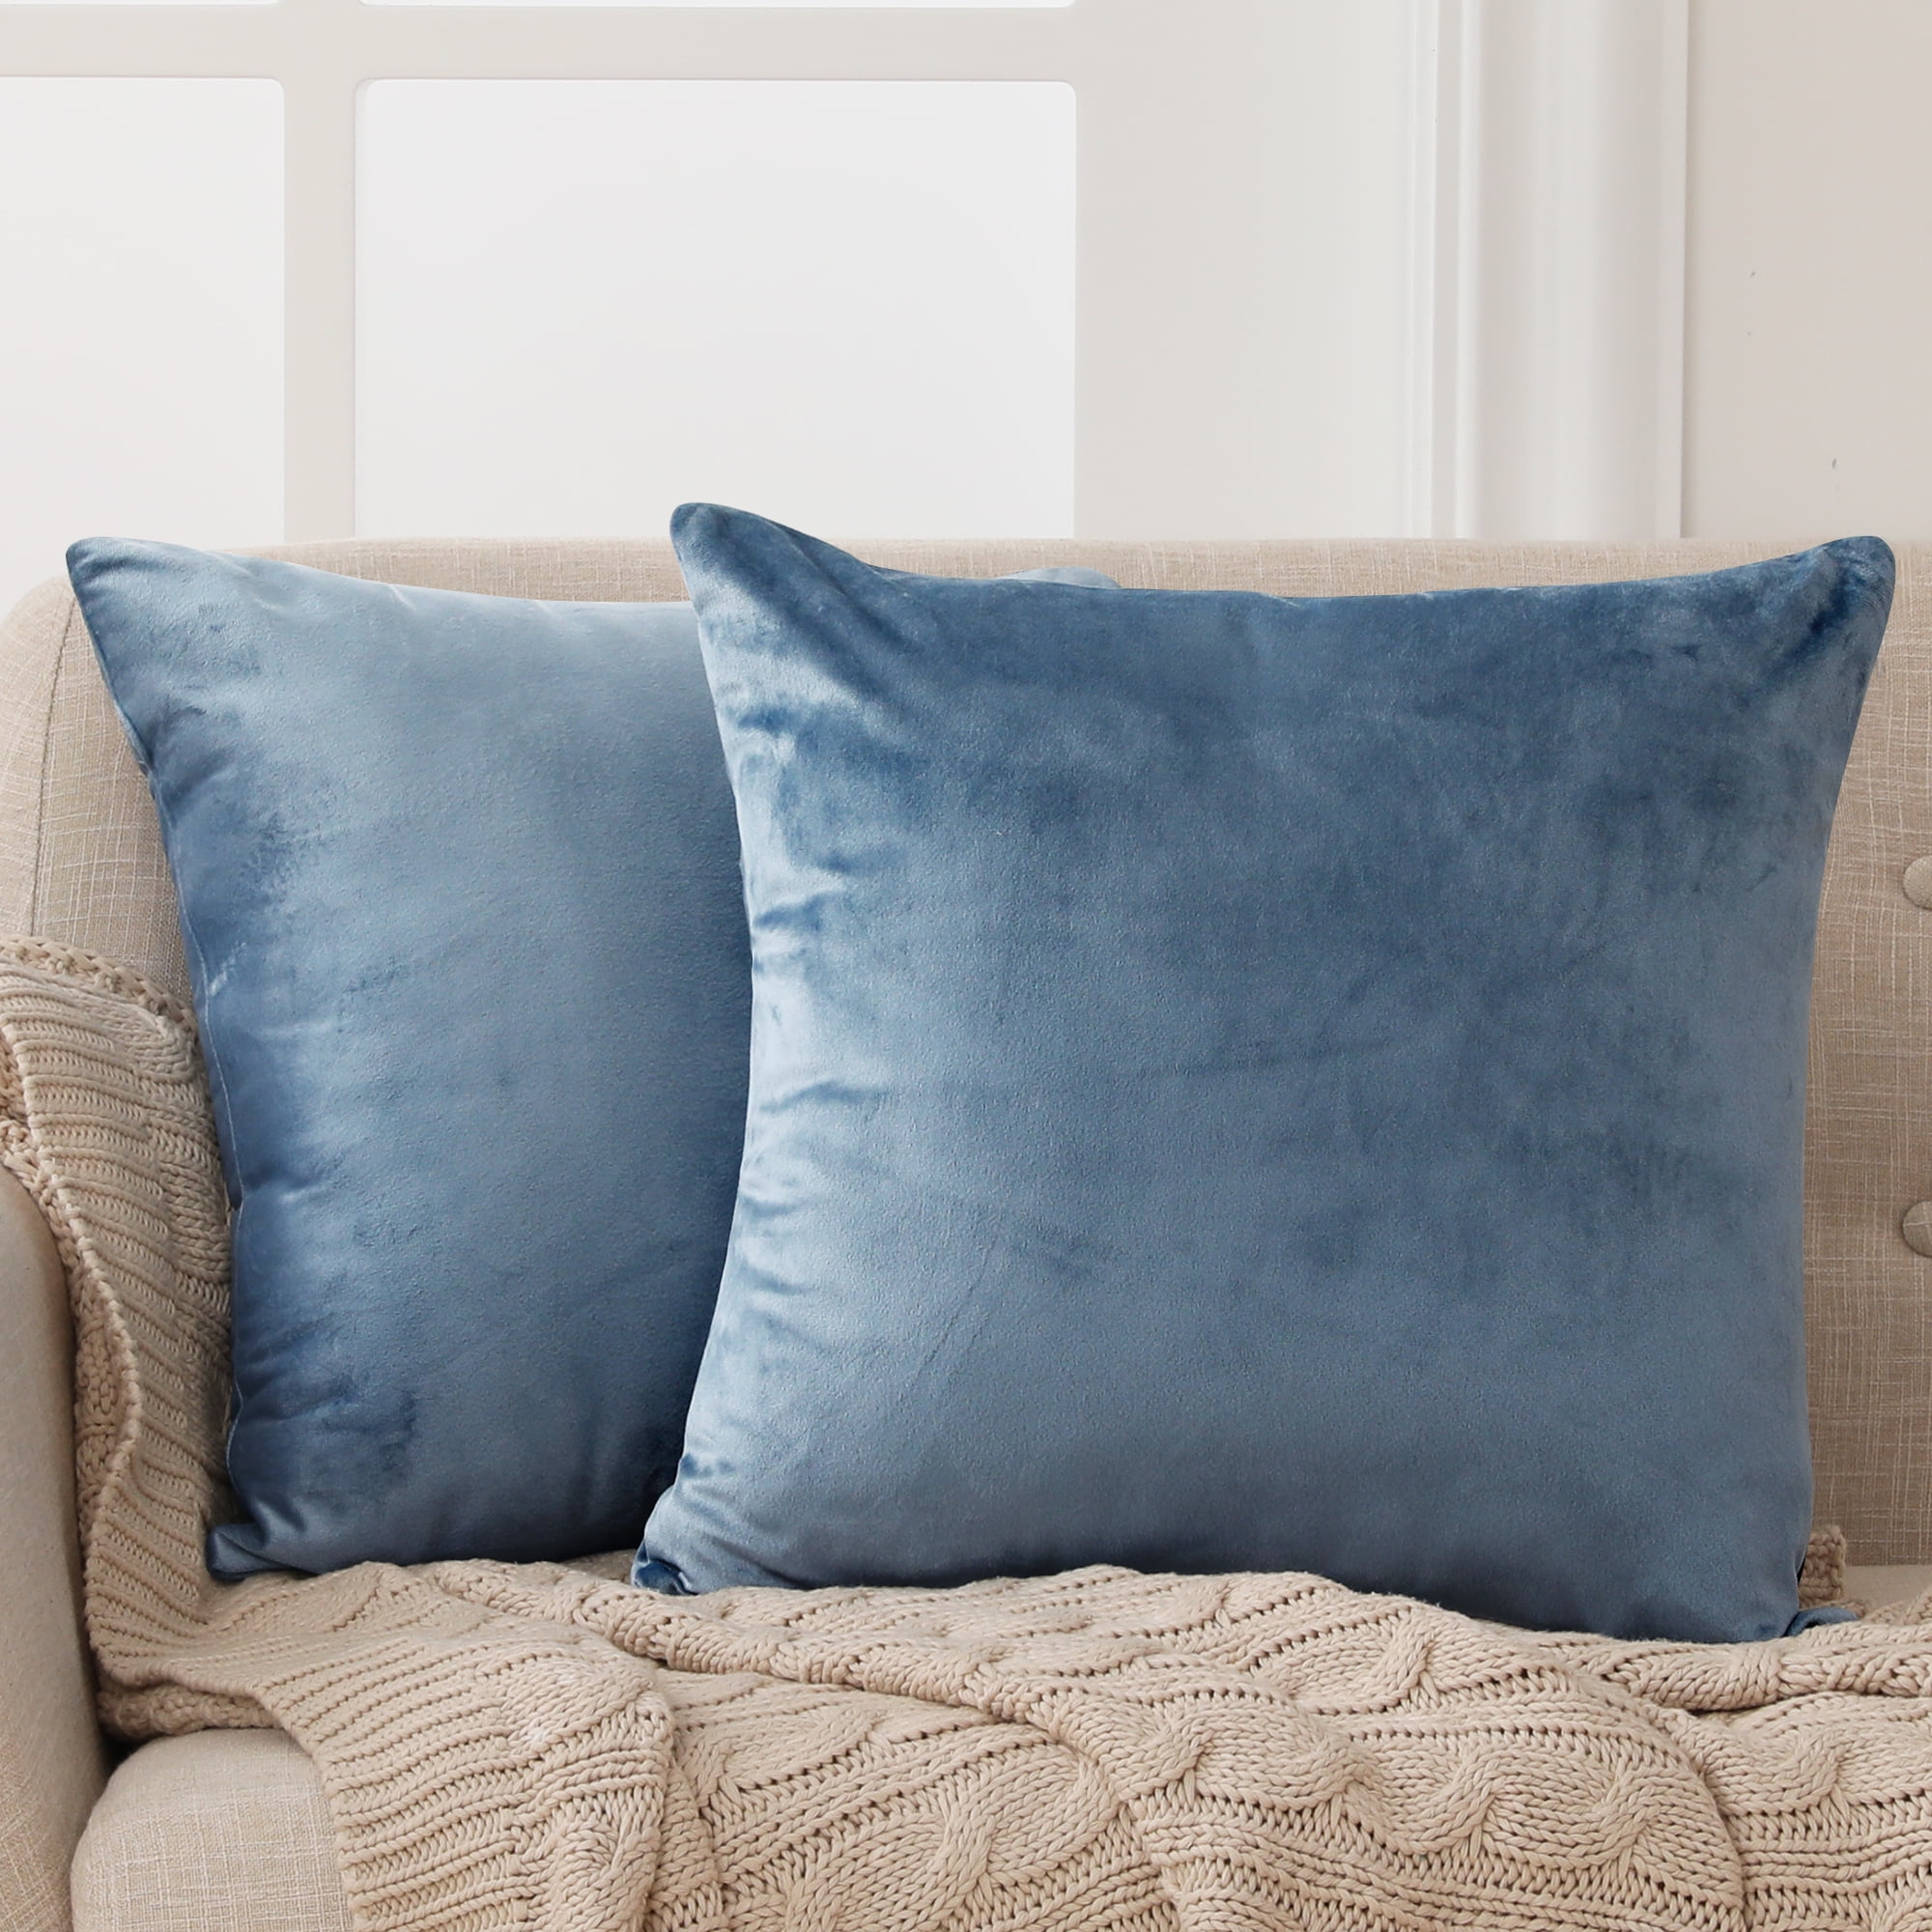 Paint Splatter Throw Cushion Cover Luxury 45x45 cm Velvet Blue Fabric